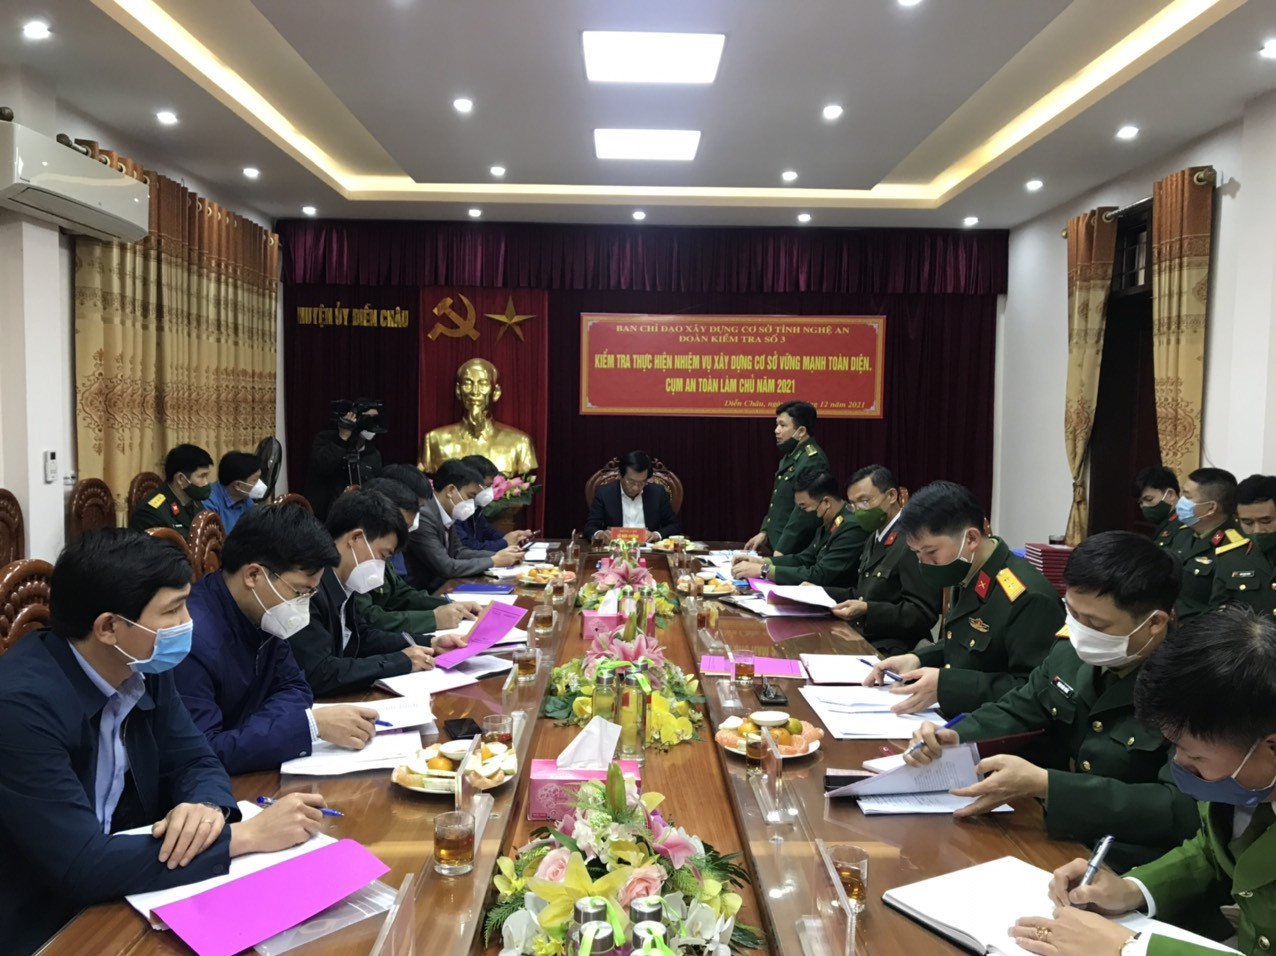 Toàn cảnh cuộc làm việc của đoàn công tác với Ban chỉ đạo xây dựng cơ sở vững mạnh toàn diện, cụm an toàn làm chủ tại huyện Diễn Châu. Ảnh Quang Sơn